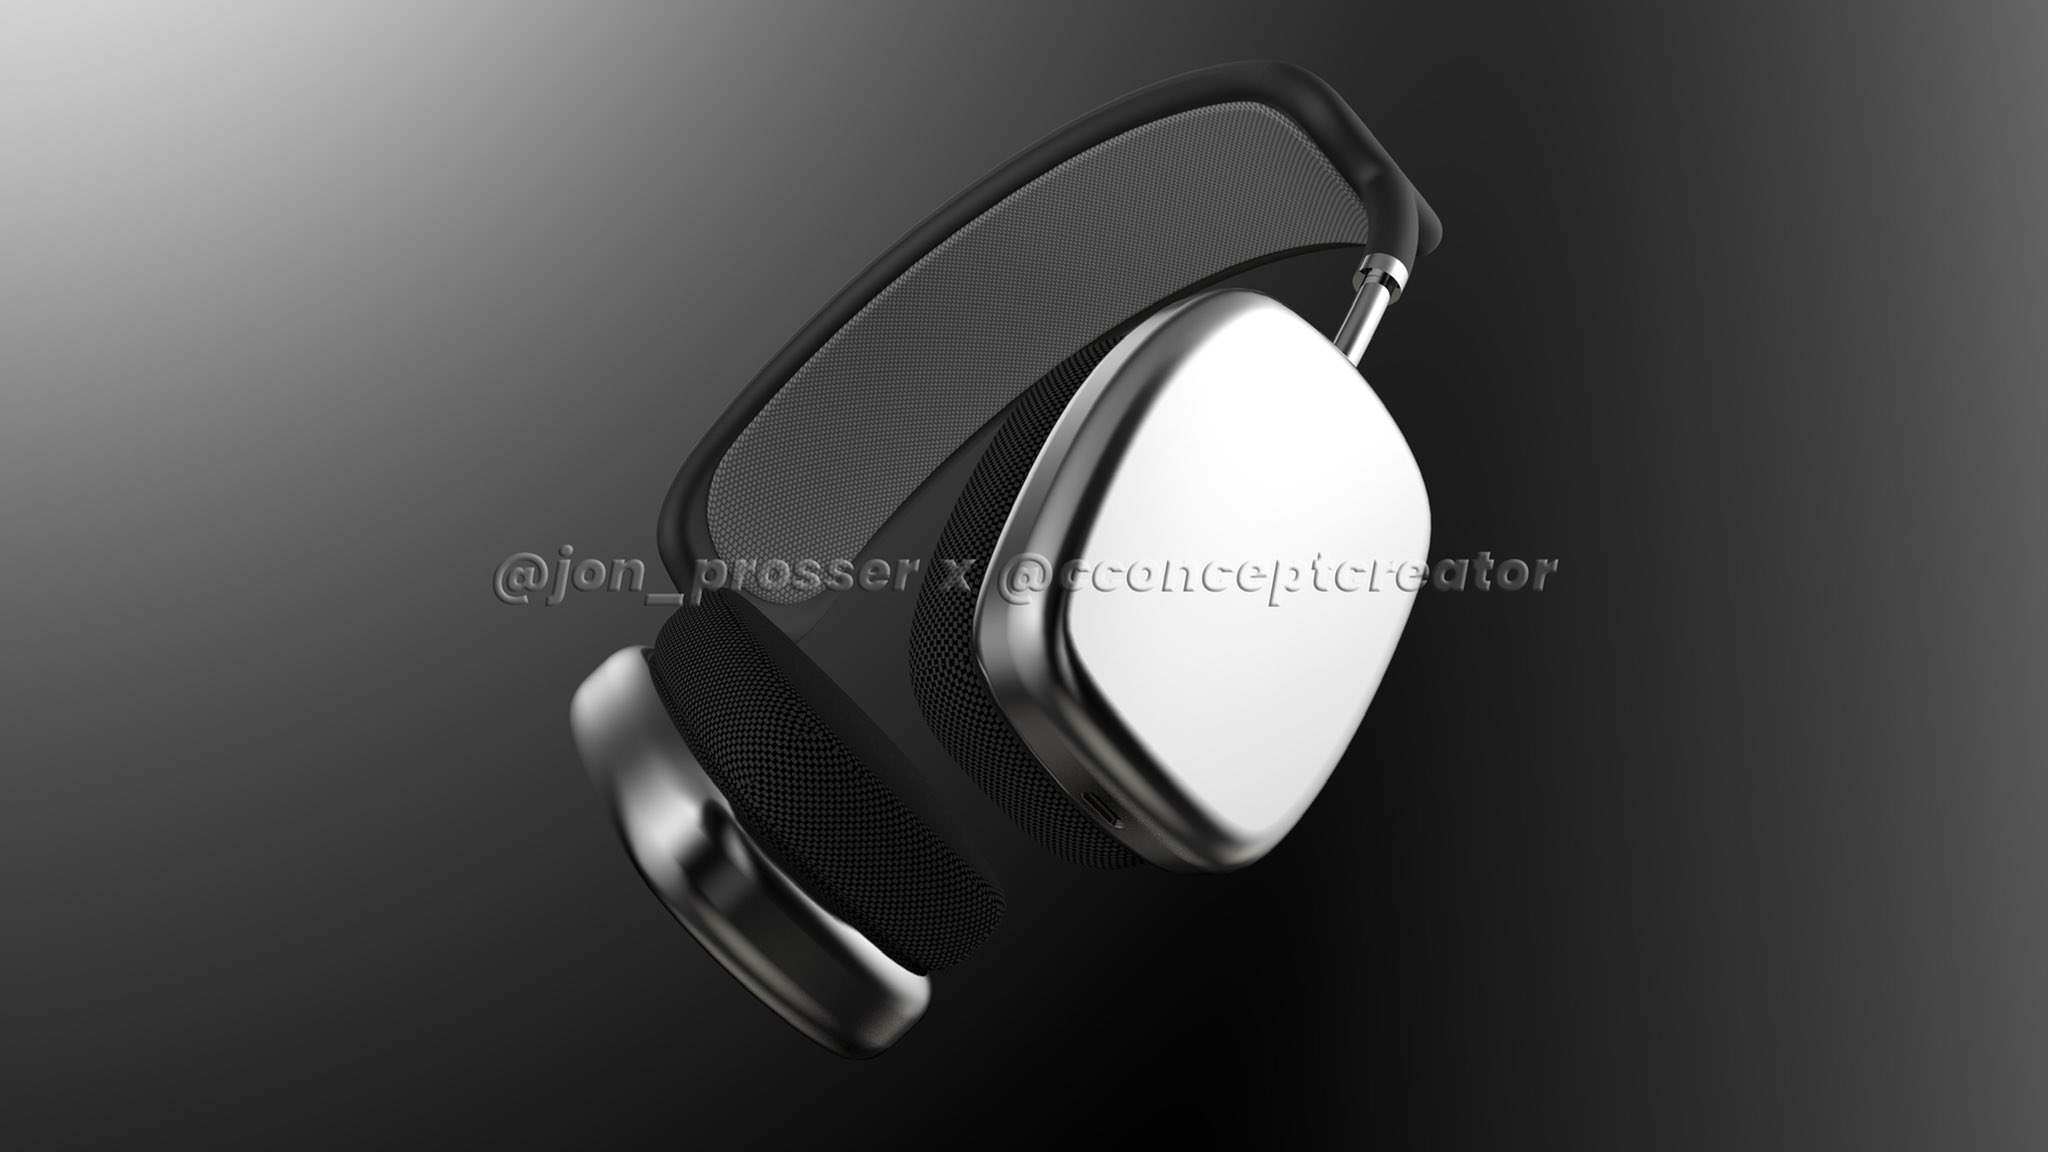 słuchawki Apple AirPods Studio cena kiedy premiera wygląd jak wyglądają plotki przecieki wycieki nowy HomePod iPhone 12